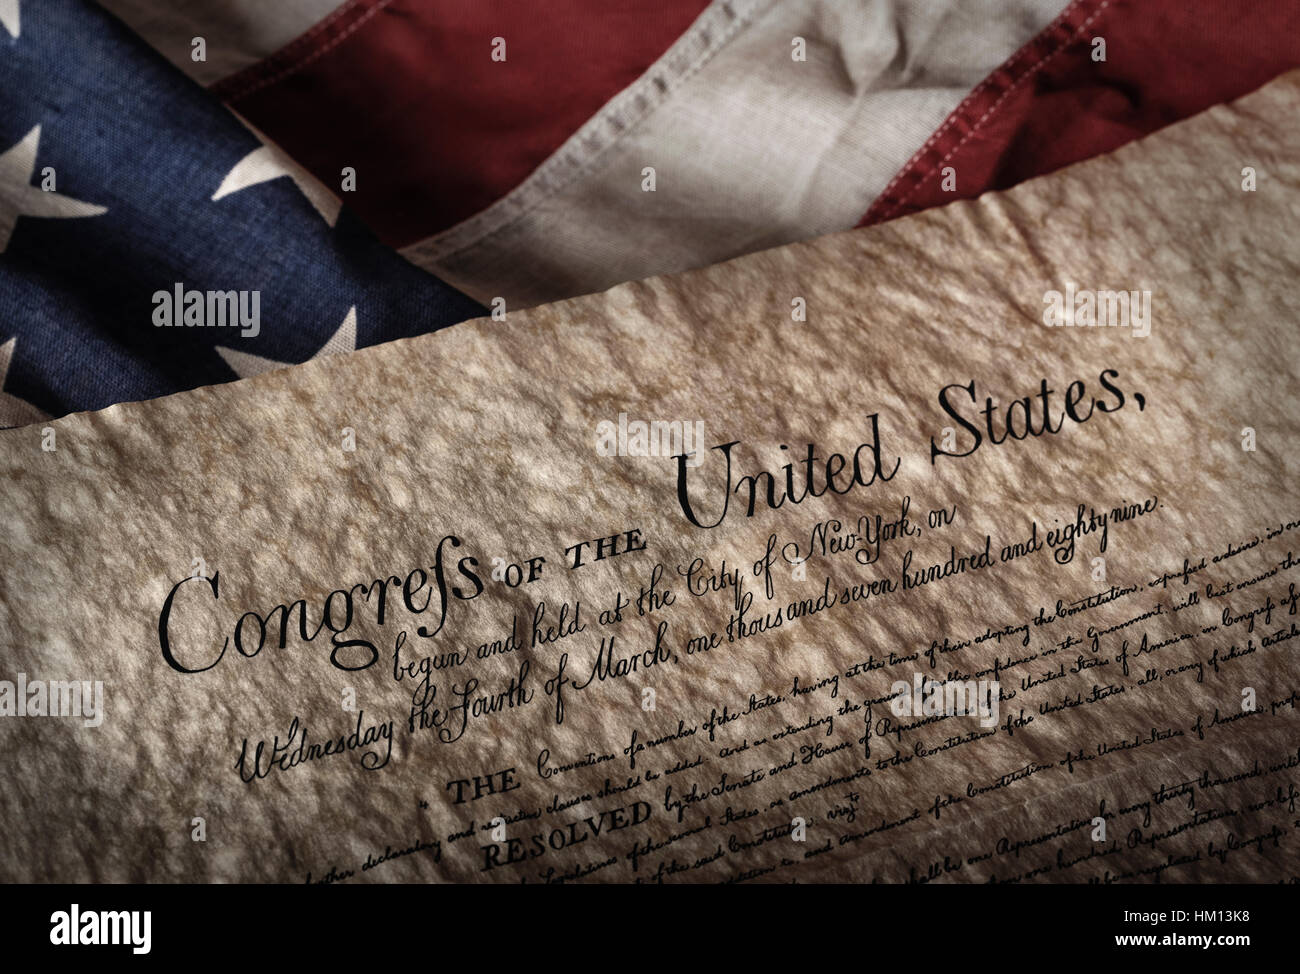 Déclaration américaine des droits de l'homme document sur un vieux et usés US flag Banque D'Images